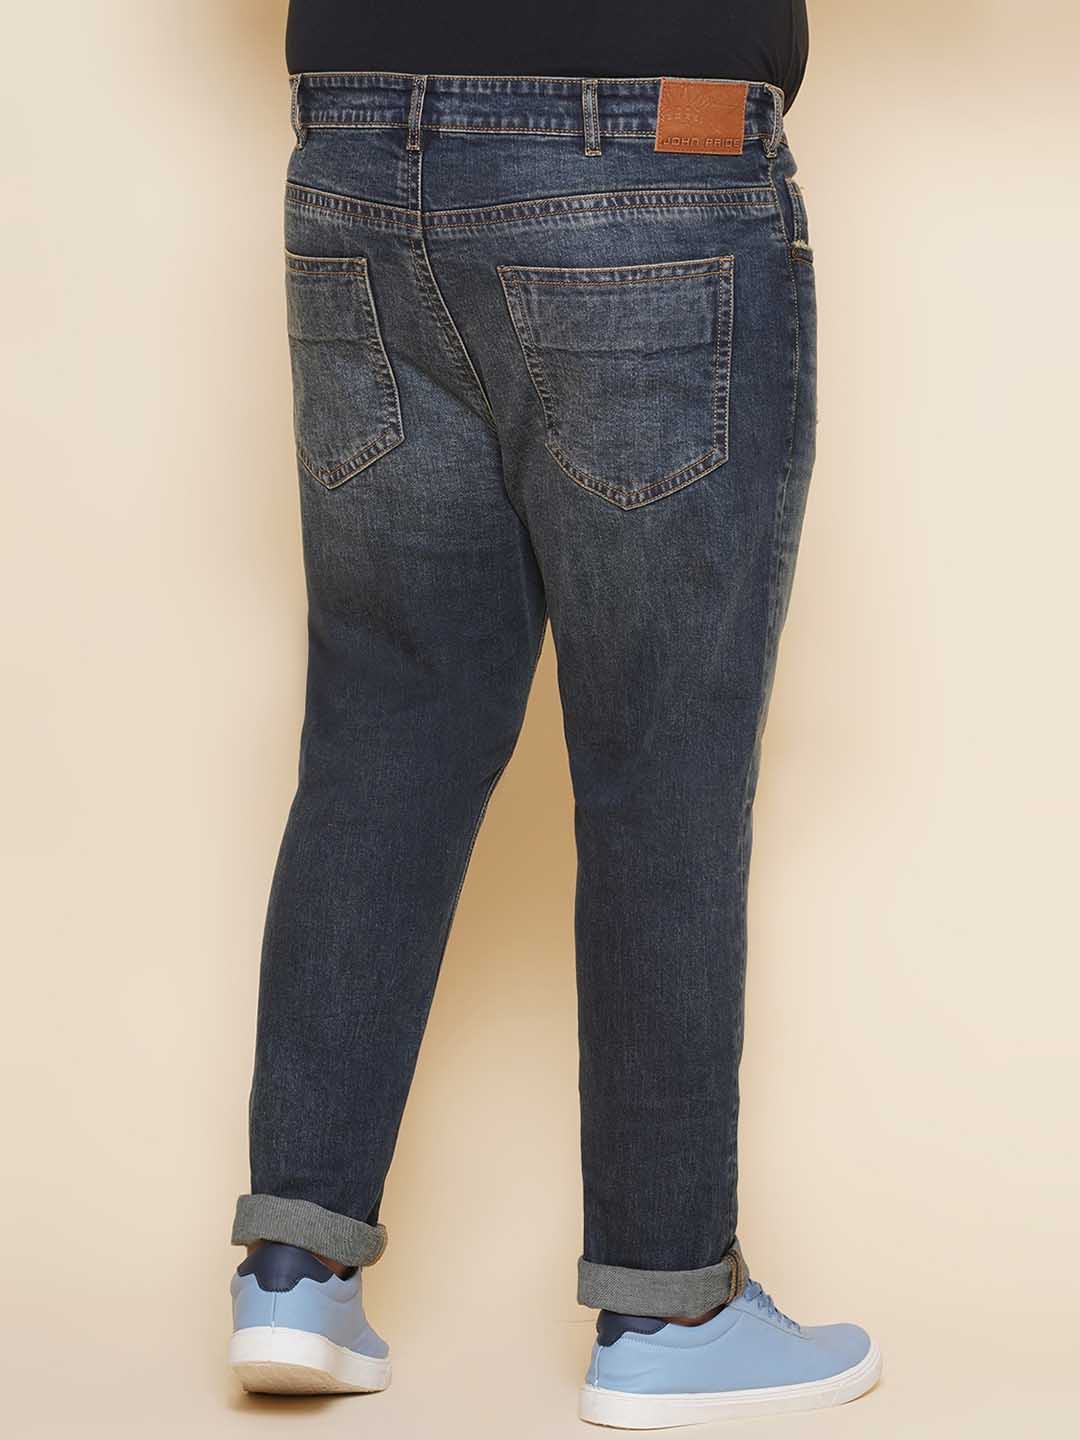 bottomwear/jeans/JPJ27105/jpj27105-5.jpg